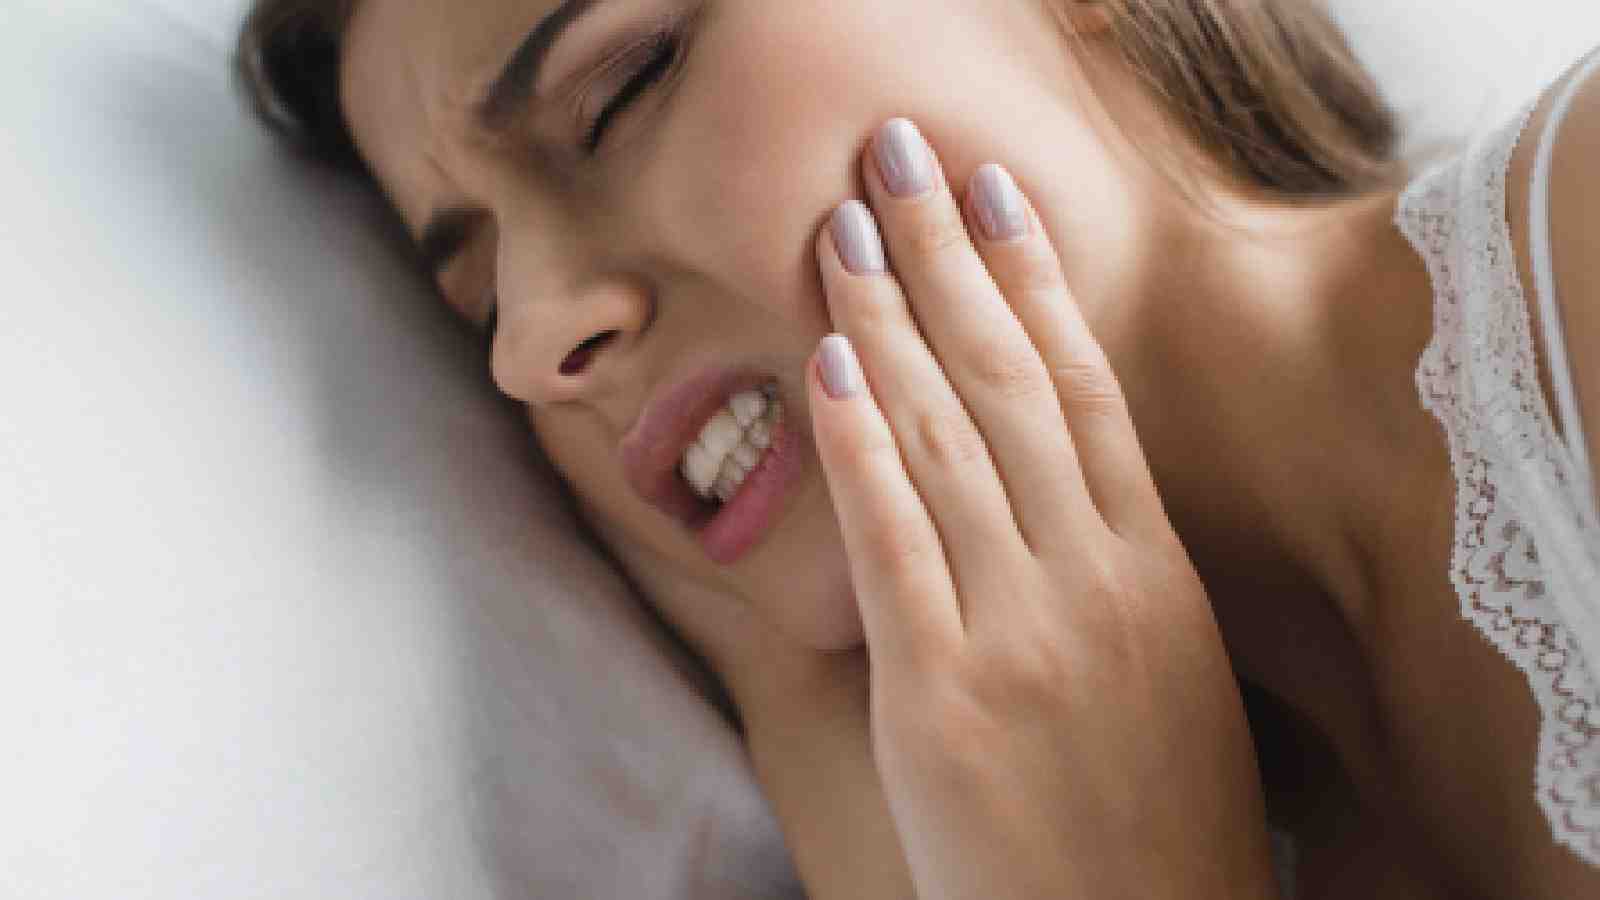 दांत में दर्द होने पर किन बातों का ध्यान रखें?